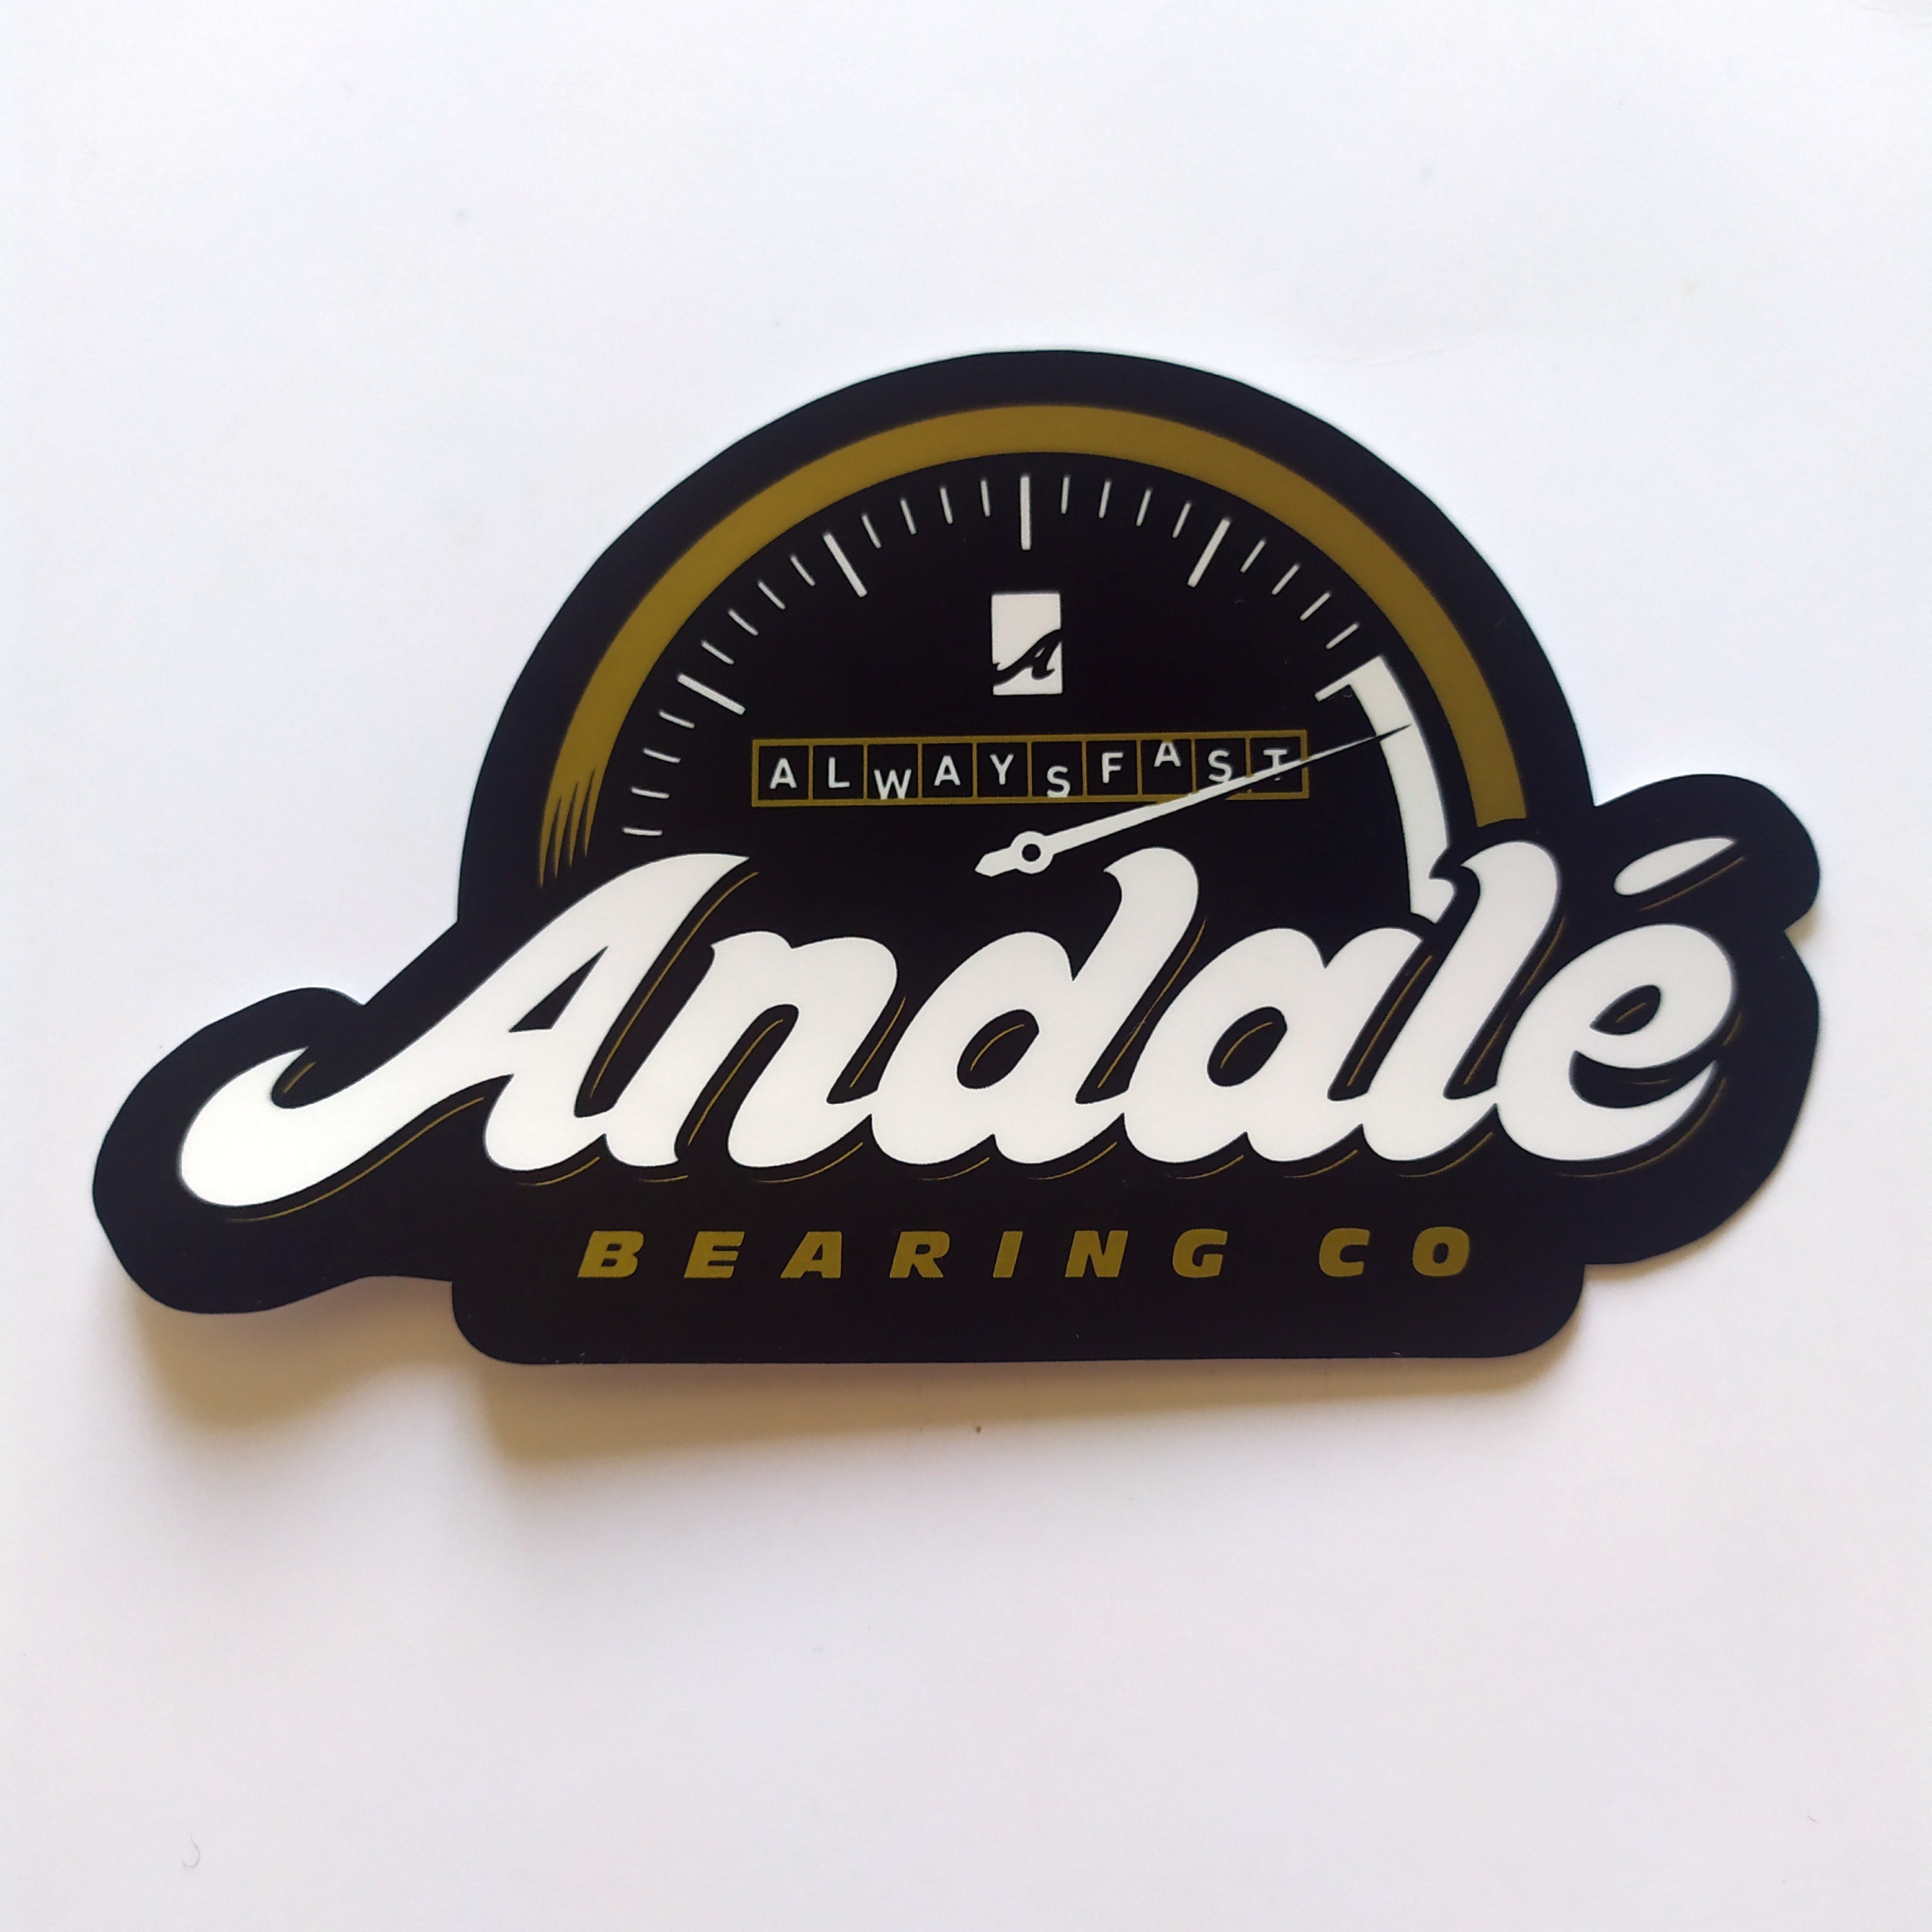 Andale Bearings Skateboard Sticker - "Always Fast" - 10.5cm across approx - SkateboardStickers.com